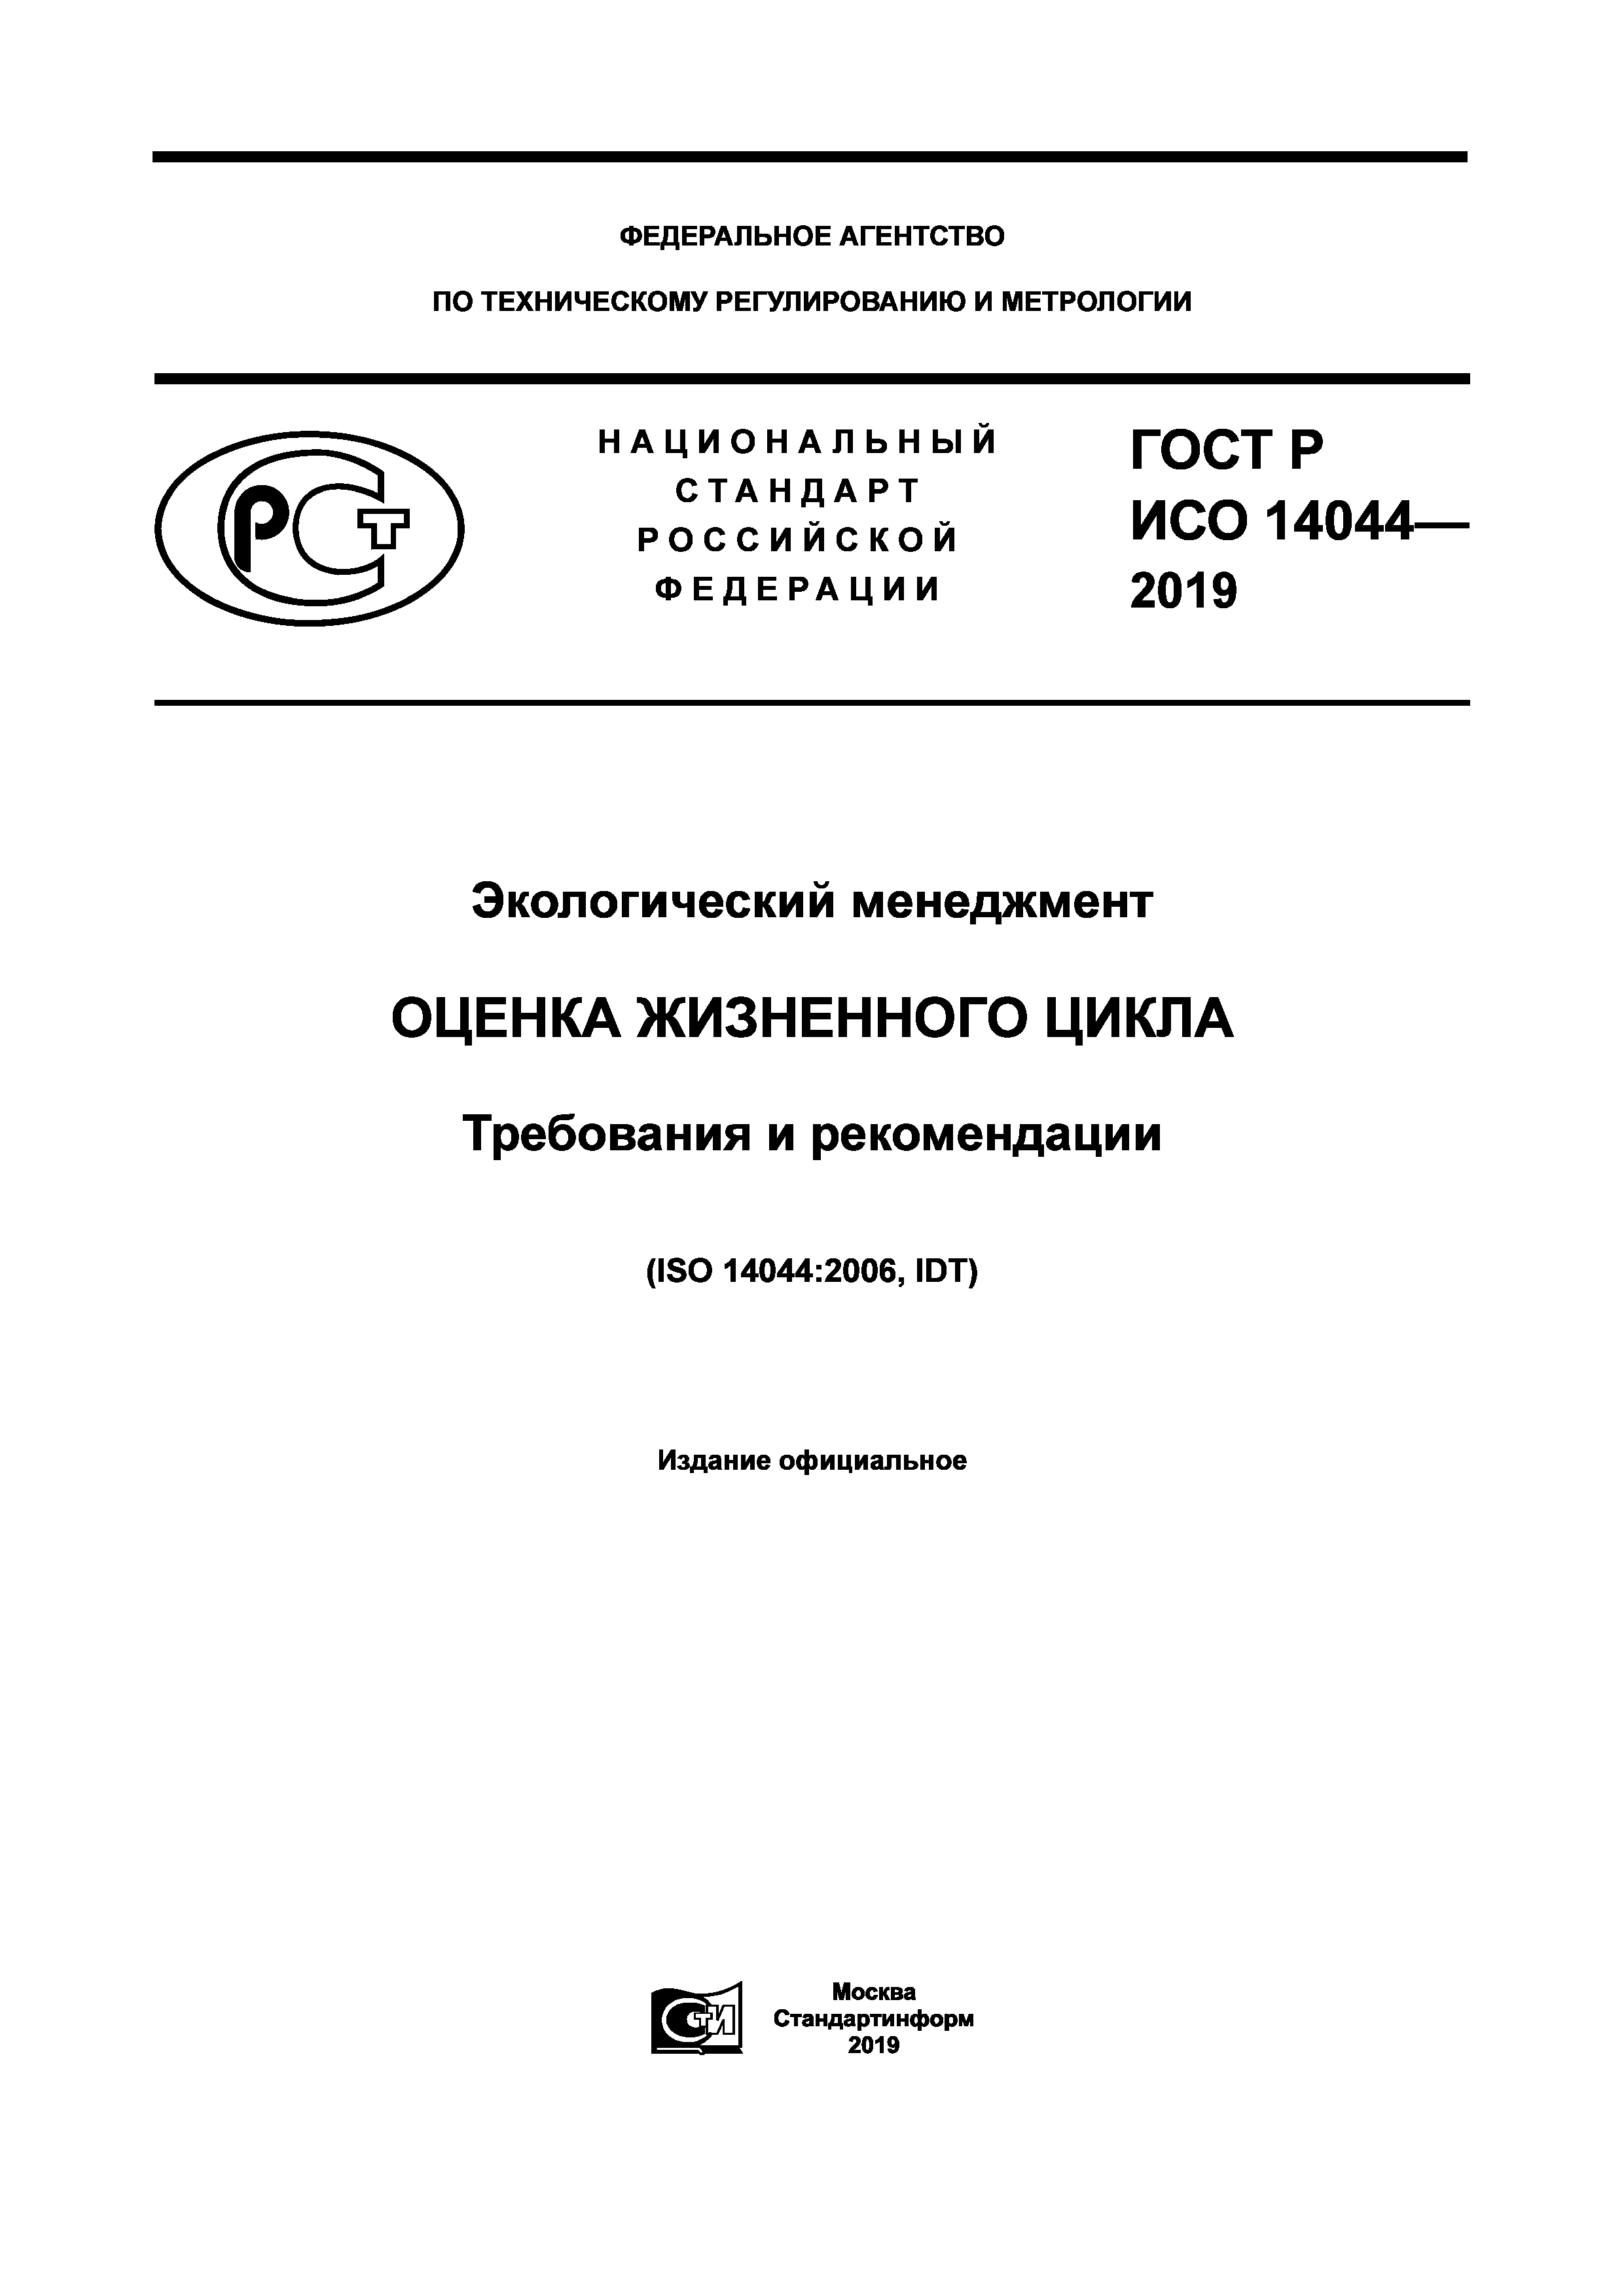 ГОСТ Р ИСО 14044-2019